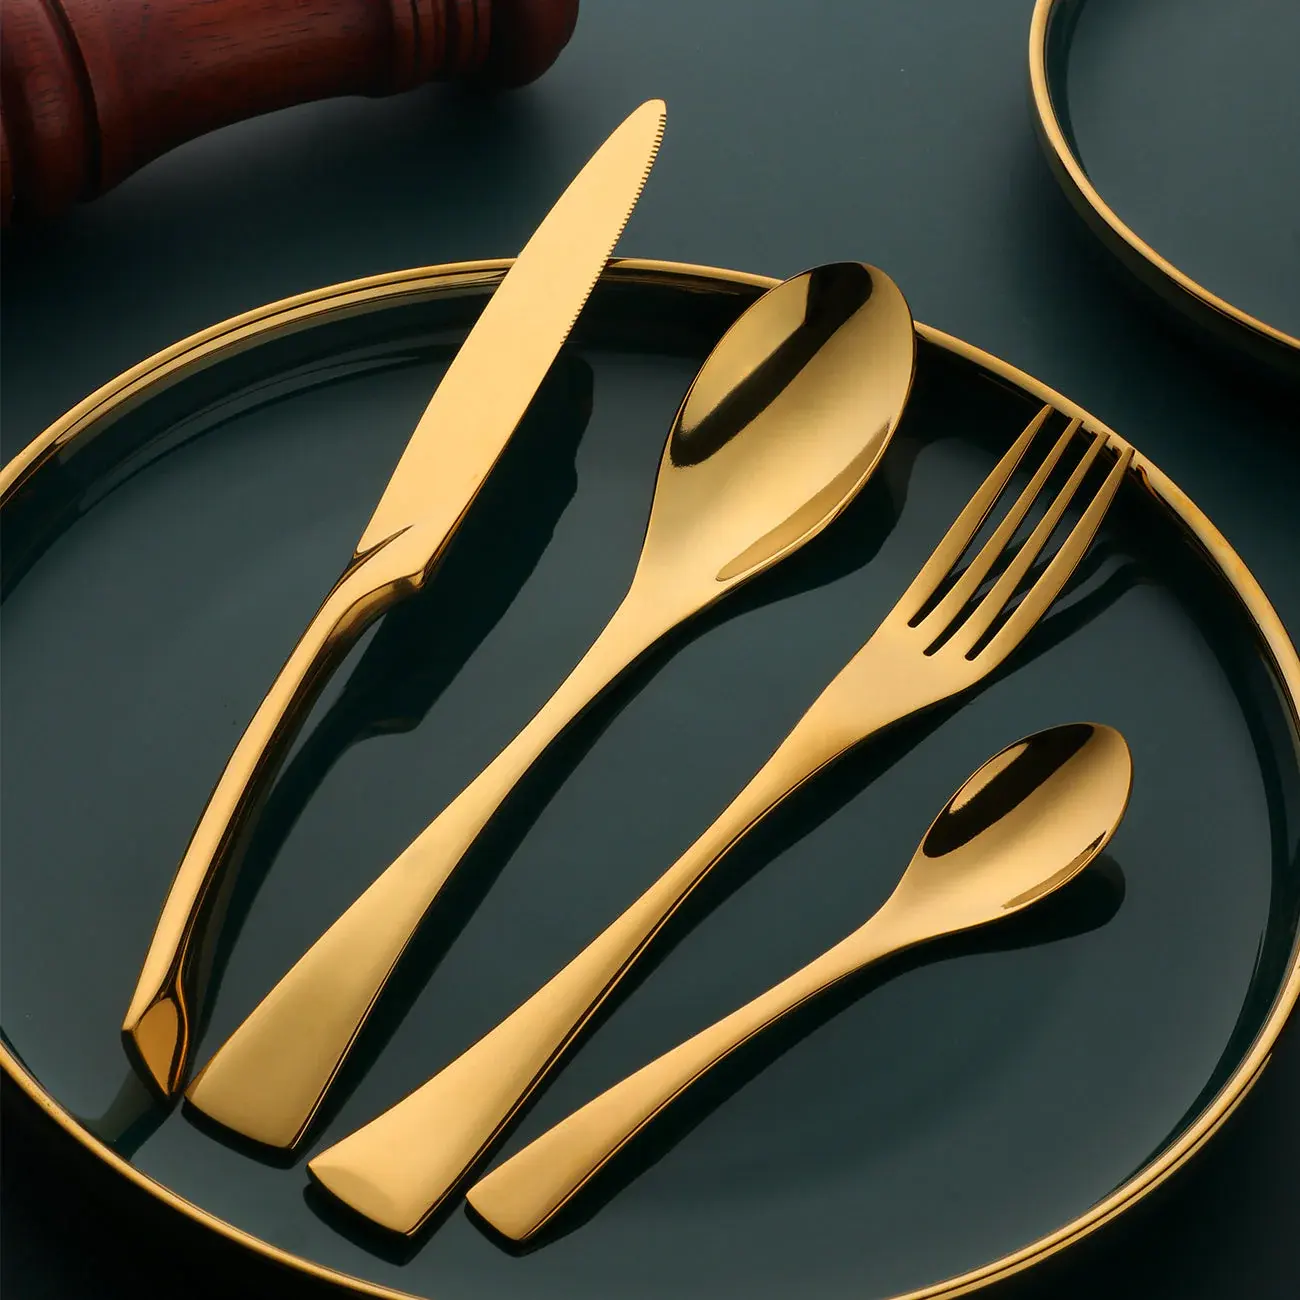 أدوات المائدة من الفولاذ المقاوم للصدأ، مجموعة أدوات المائدة المزخرفة بالمرآة والذهب والأسود من 4 قطع و24 قطعة، مجموعة الأدوات المزخرفة بالفضة والشوكة والملعقة وسكين العشاء